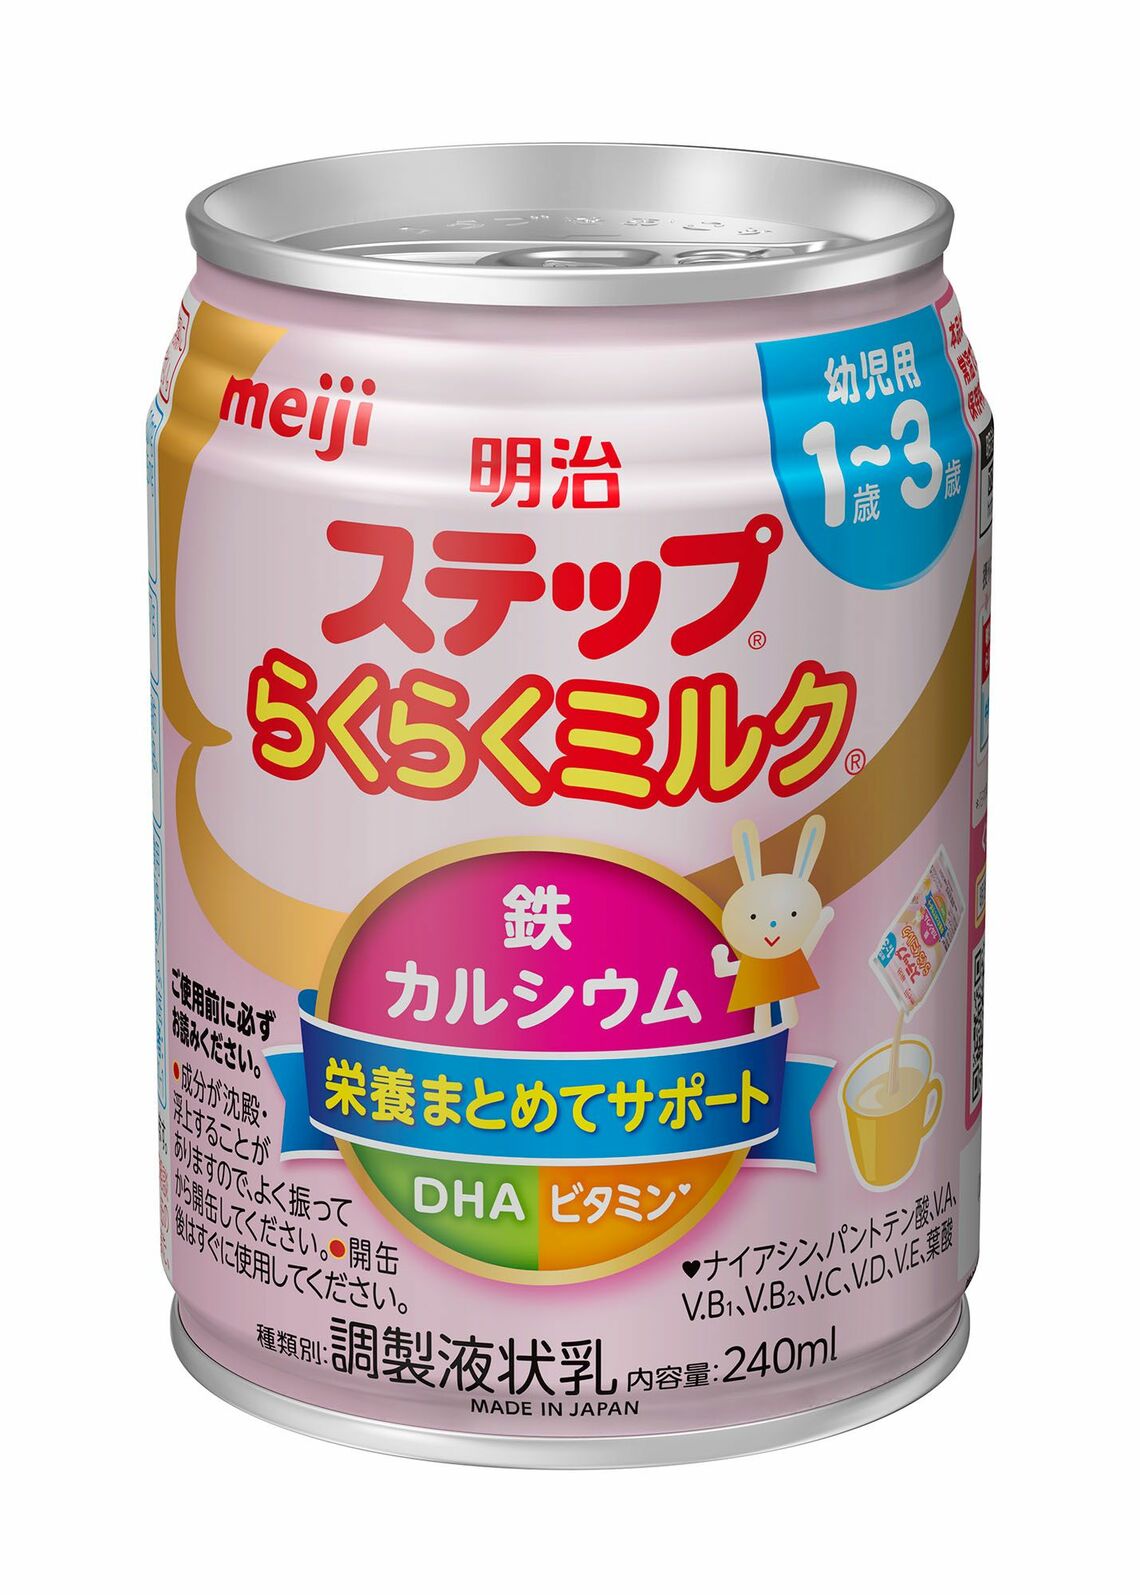 明治は9月28日に、1歳〜3歳頃の発育に必要な栄養を補給できるフォローアップミルクの液体ミルクも発売した。